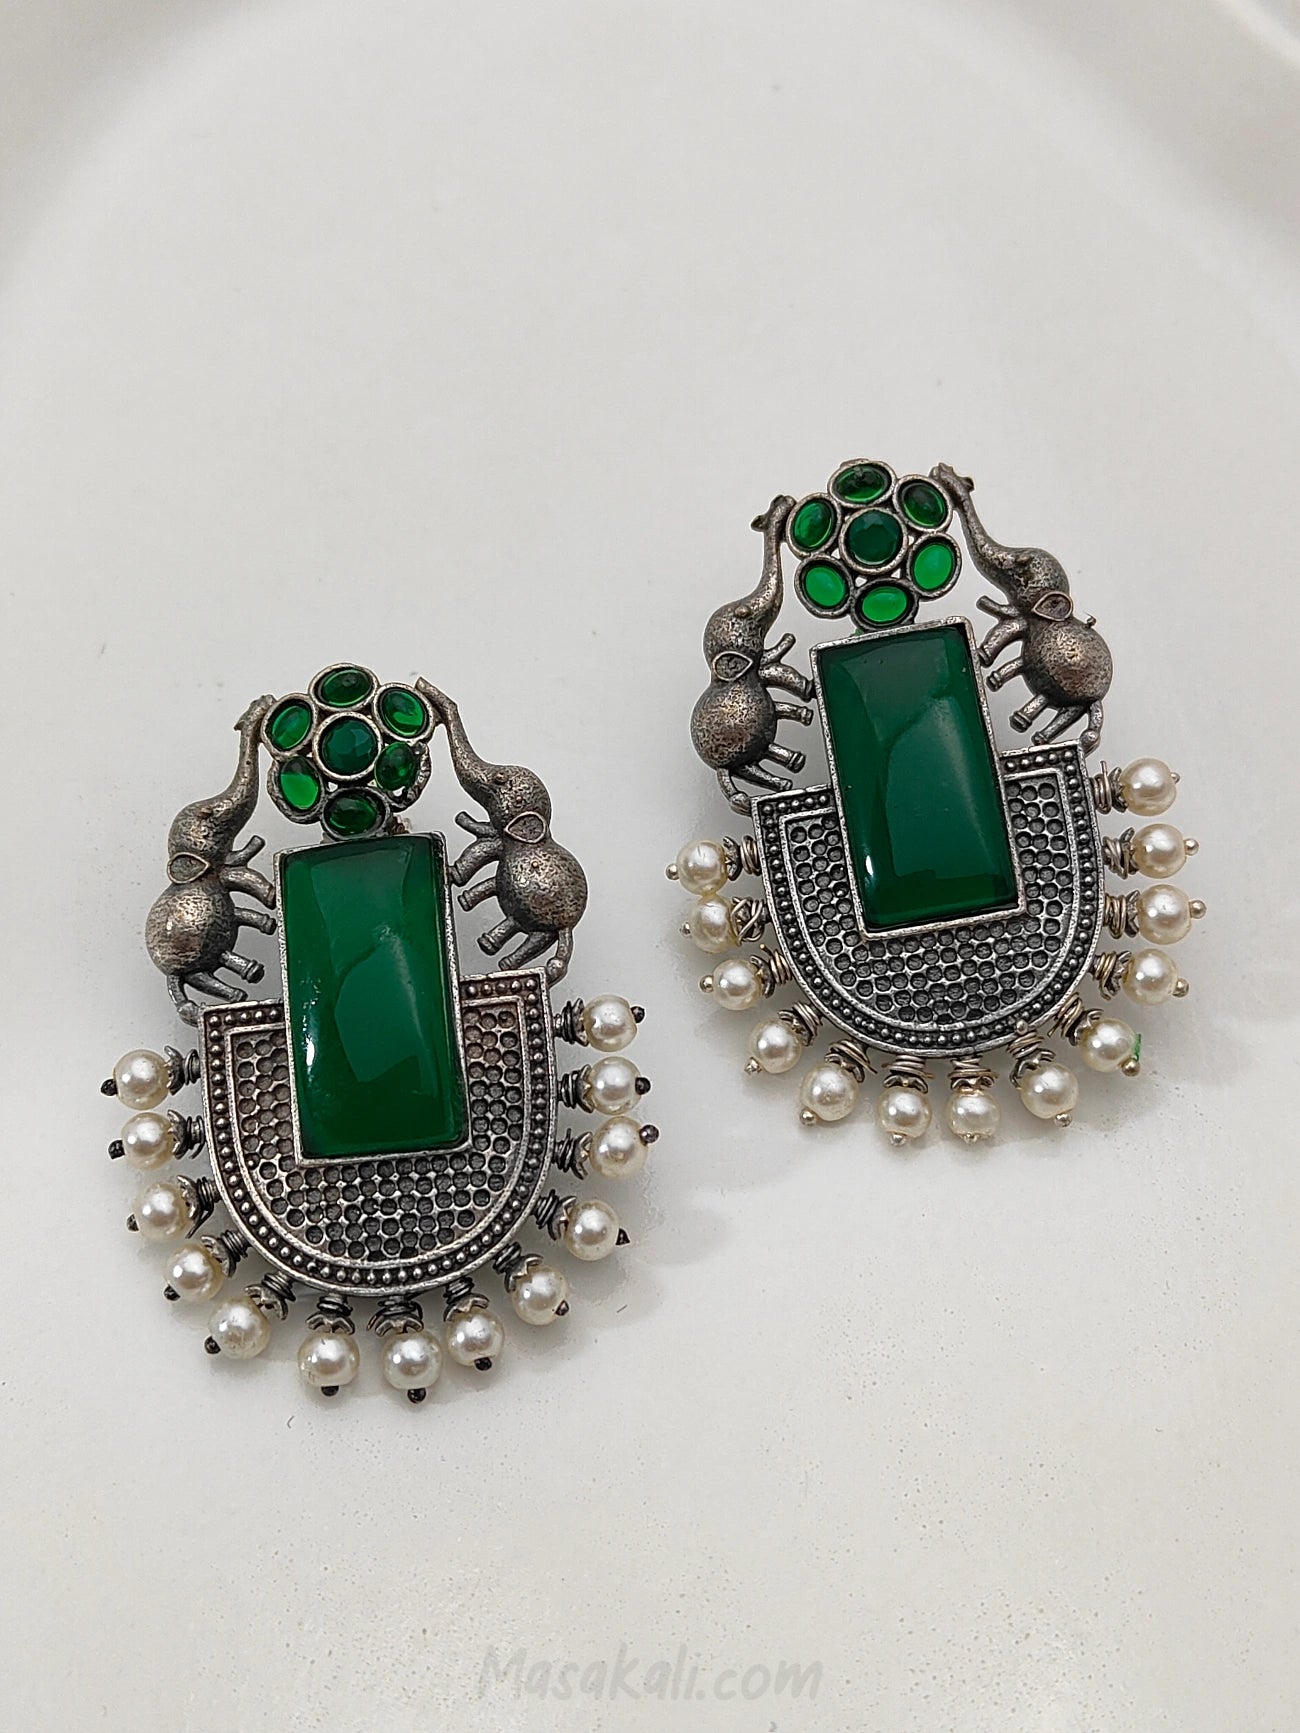 Elephant Design Earrings, Green Stone Earrings, Handmade Earrings, Beaded Earrings, Silver Oxidised Earrings